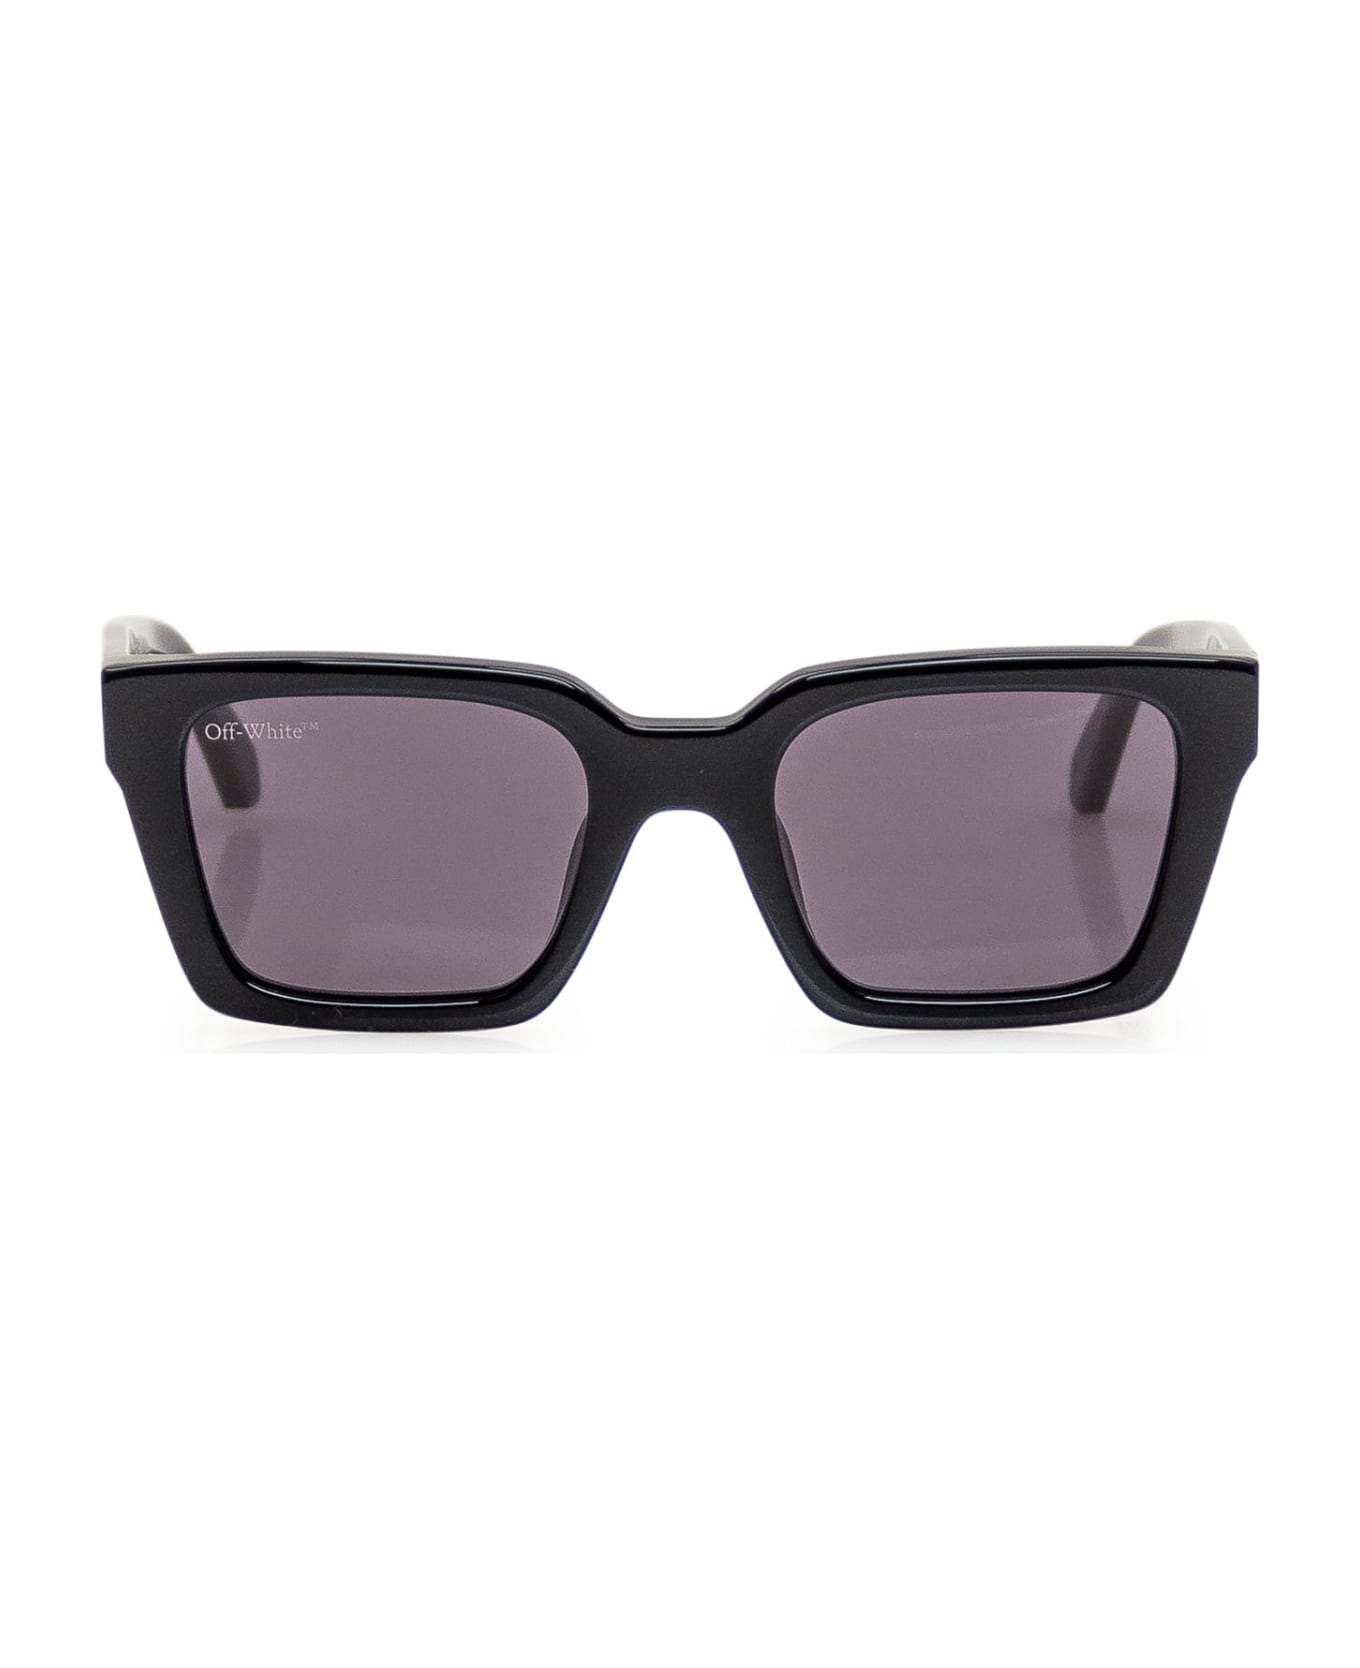 Off-White Palermo Sunglasses - 1007 BLACK